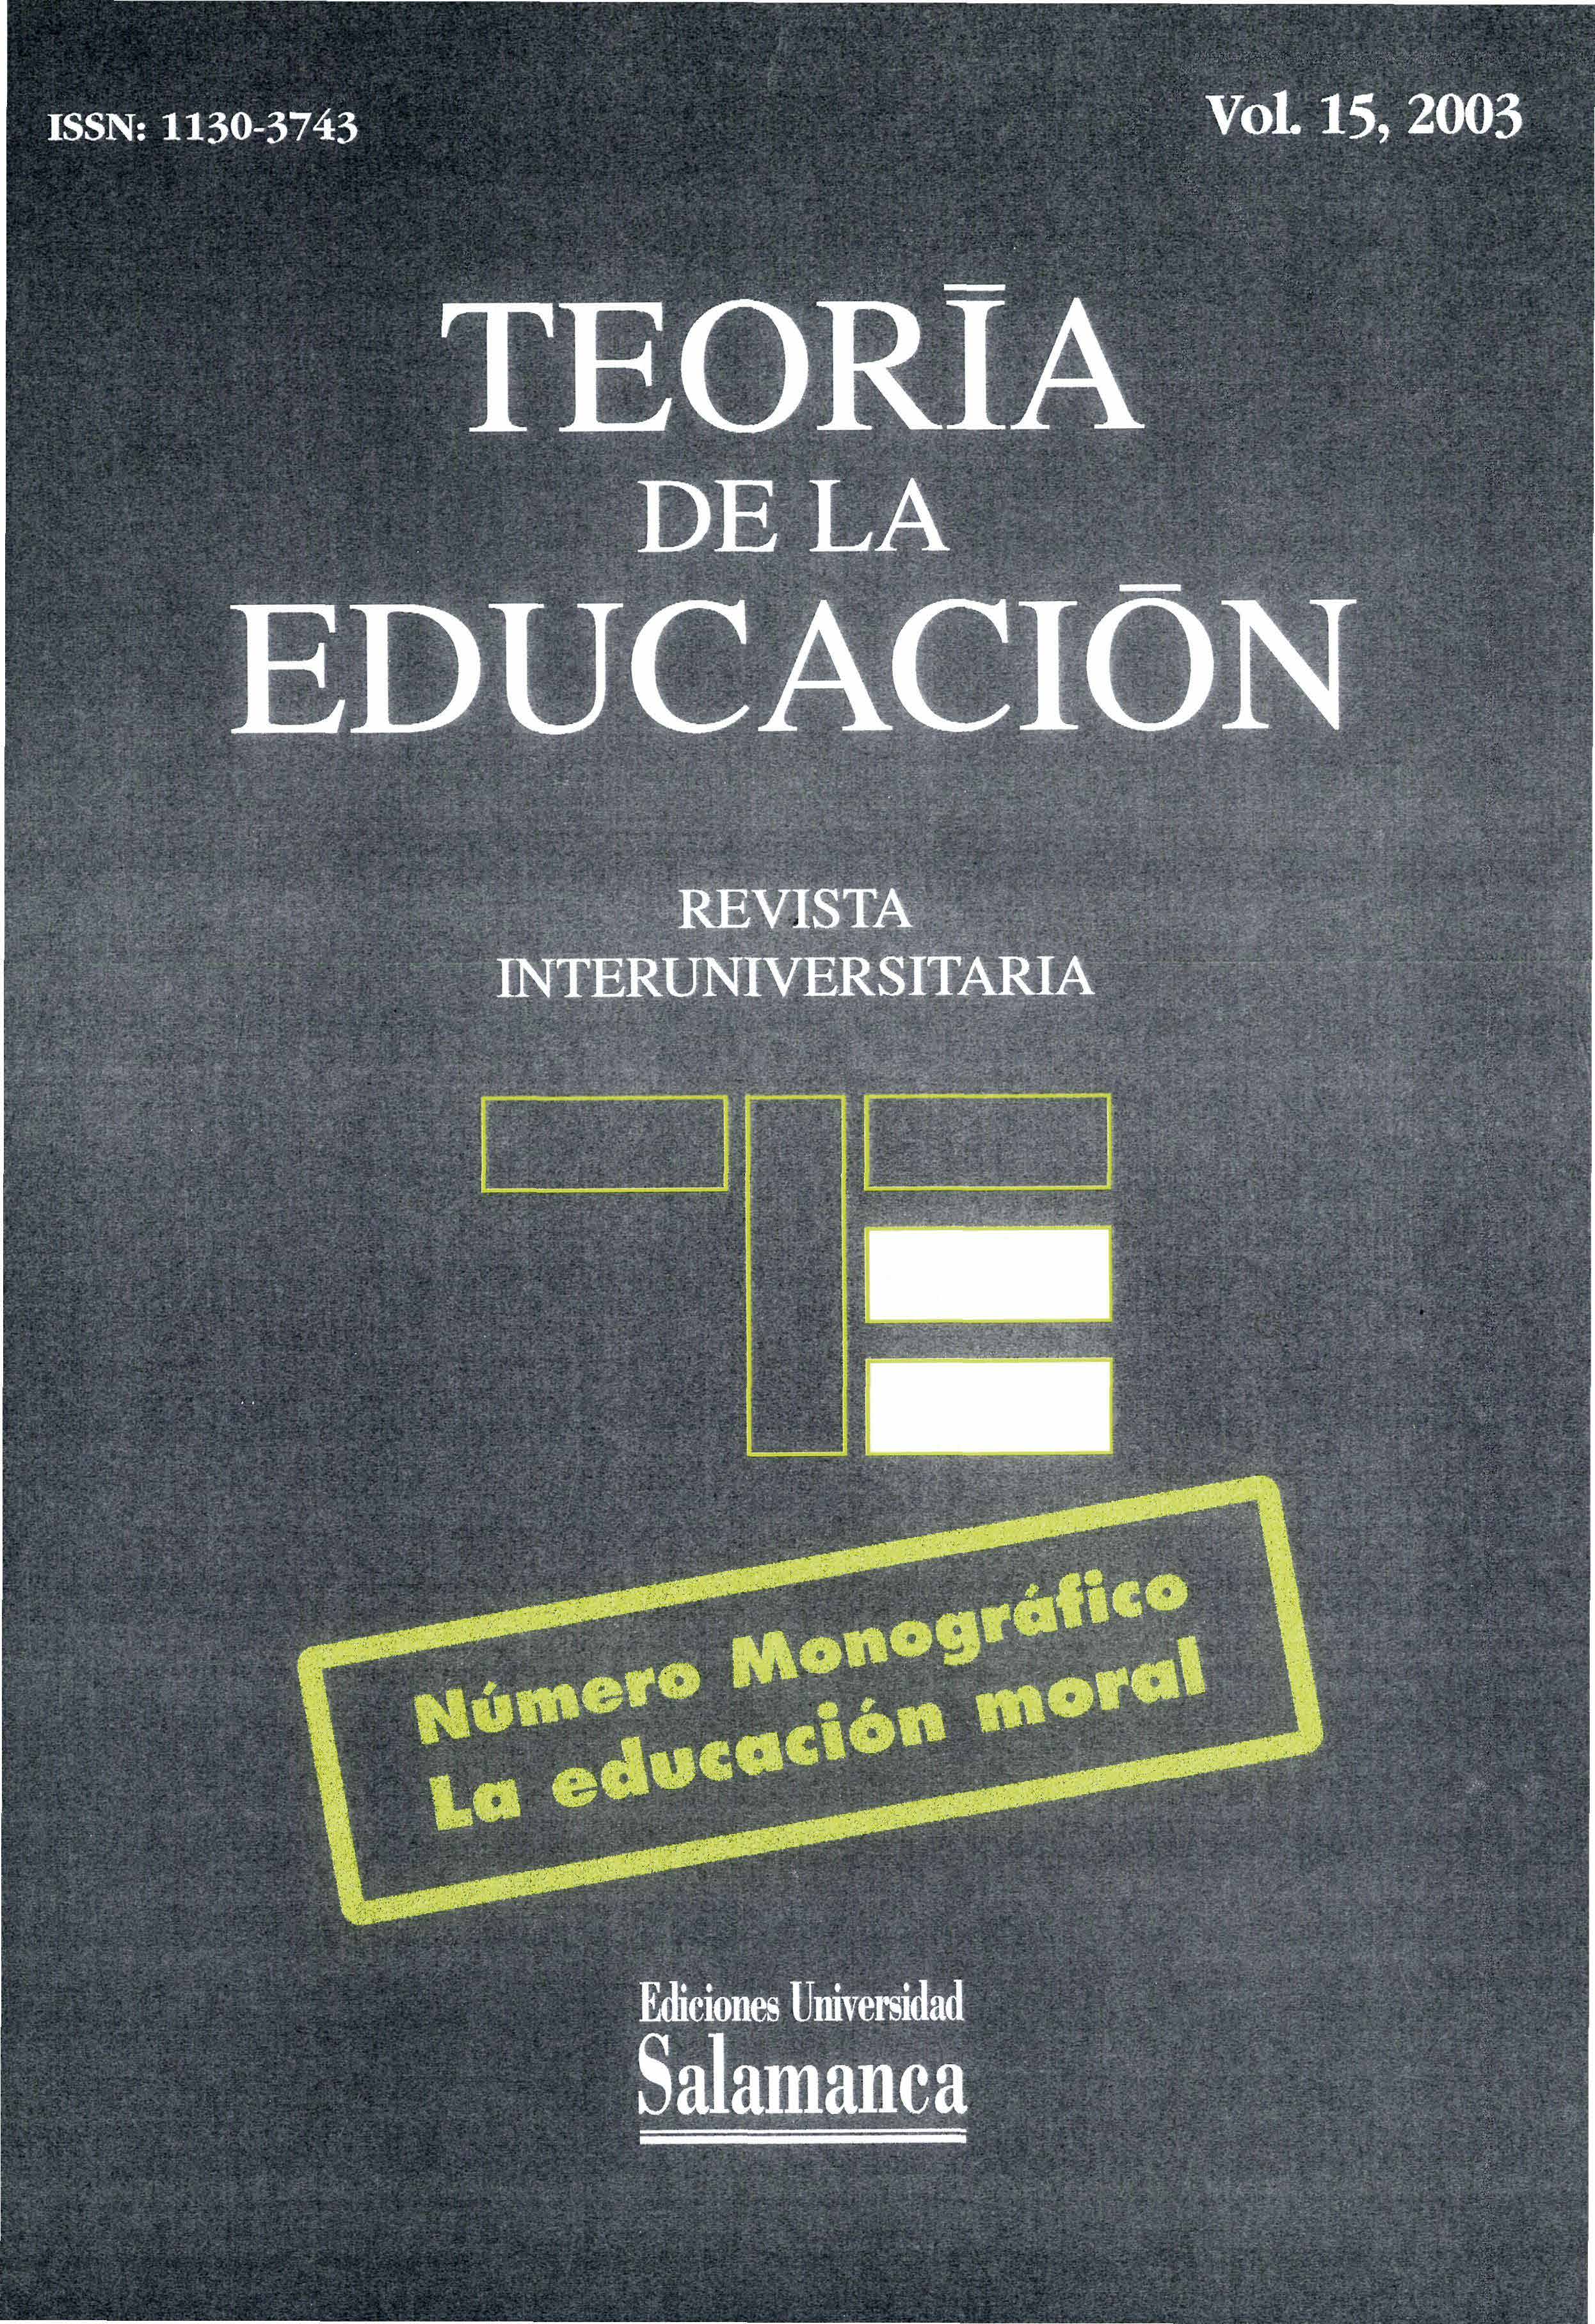                         Ver Vol. 15 (2003): La educación moral
                    